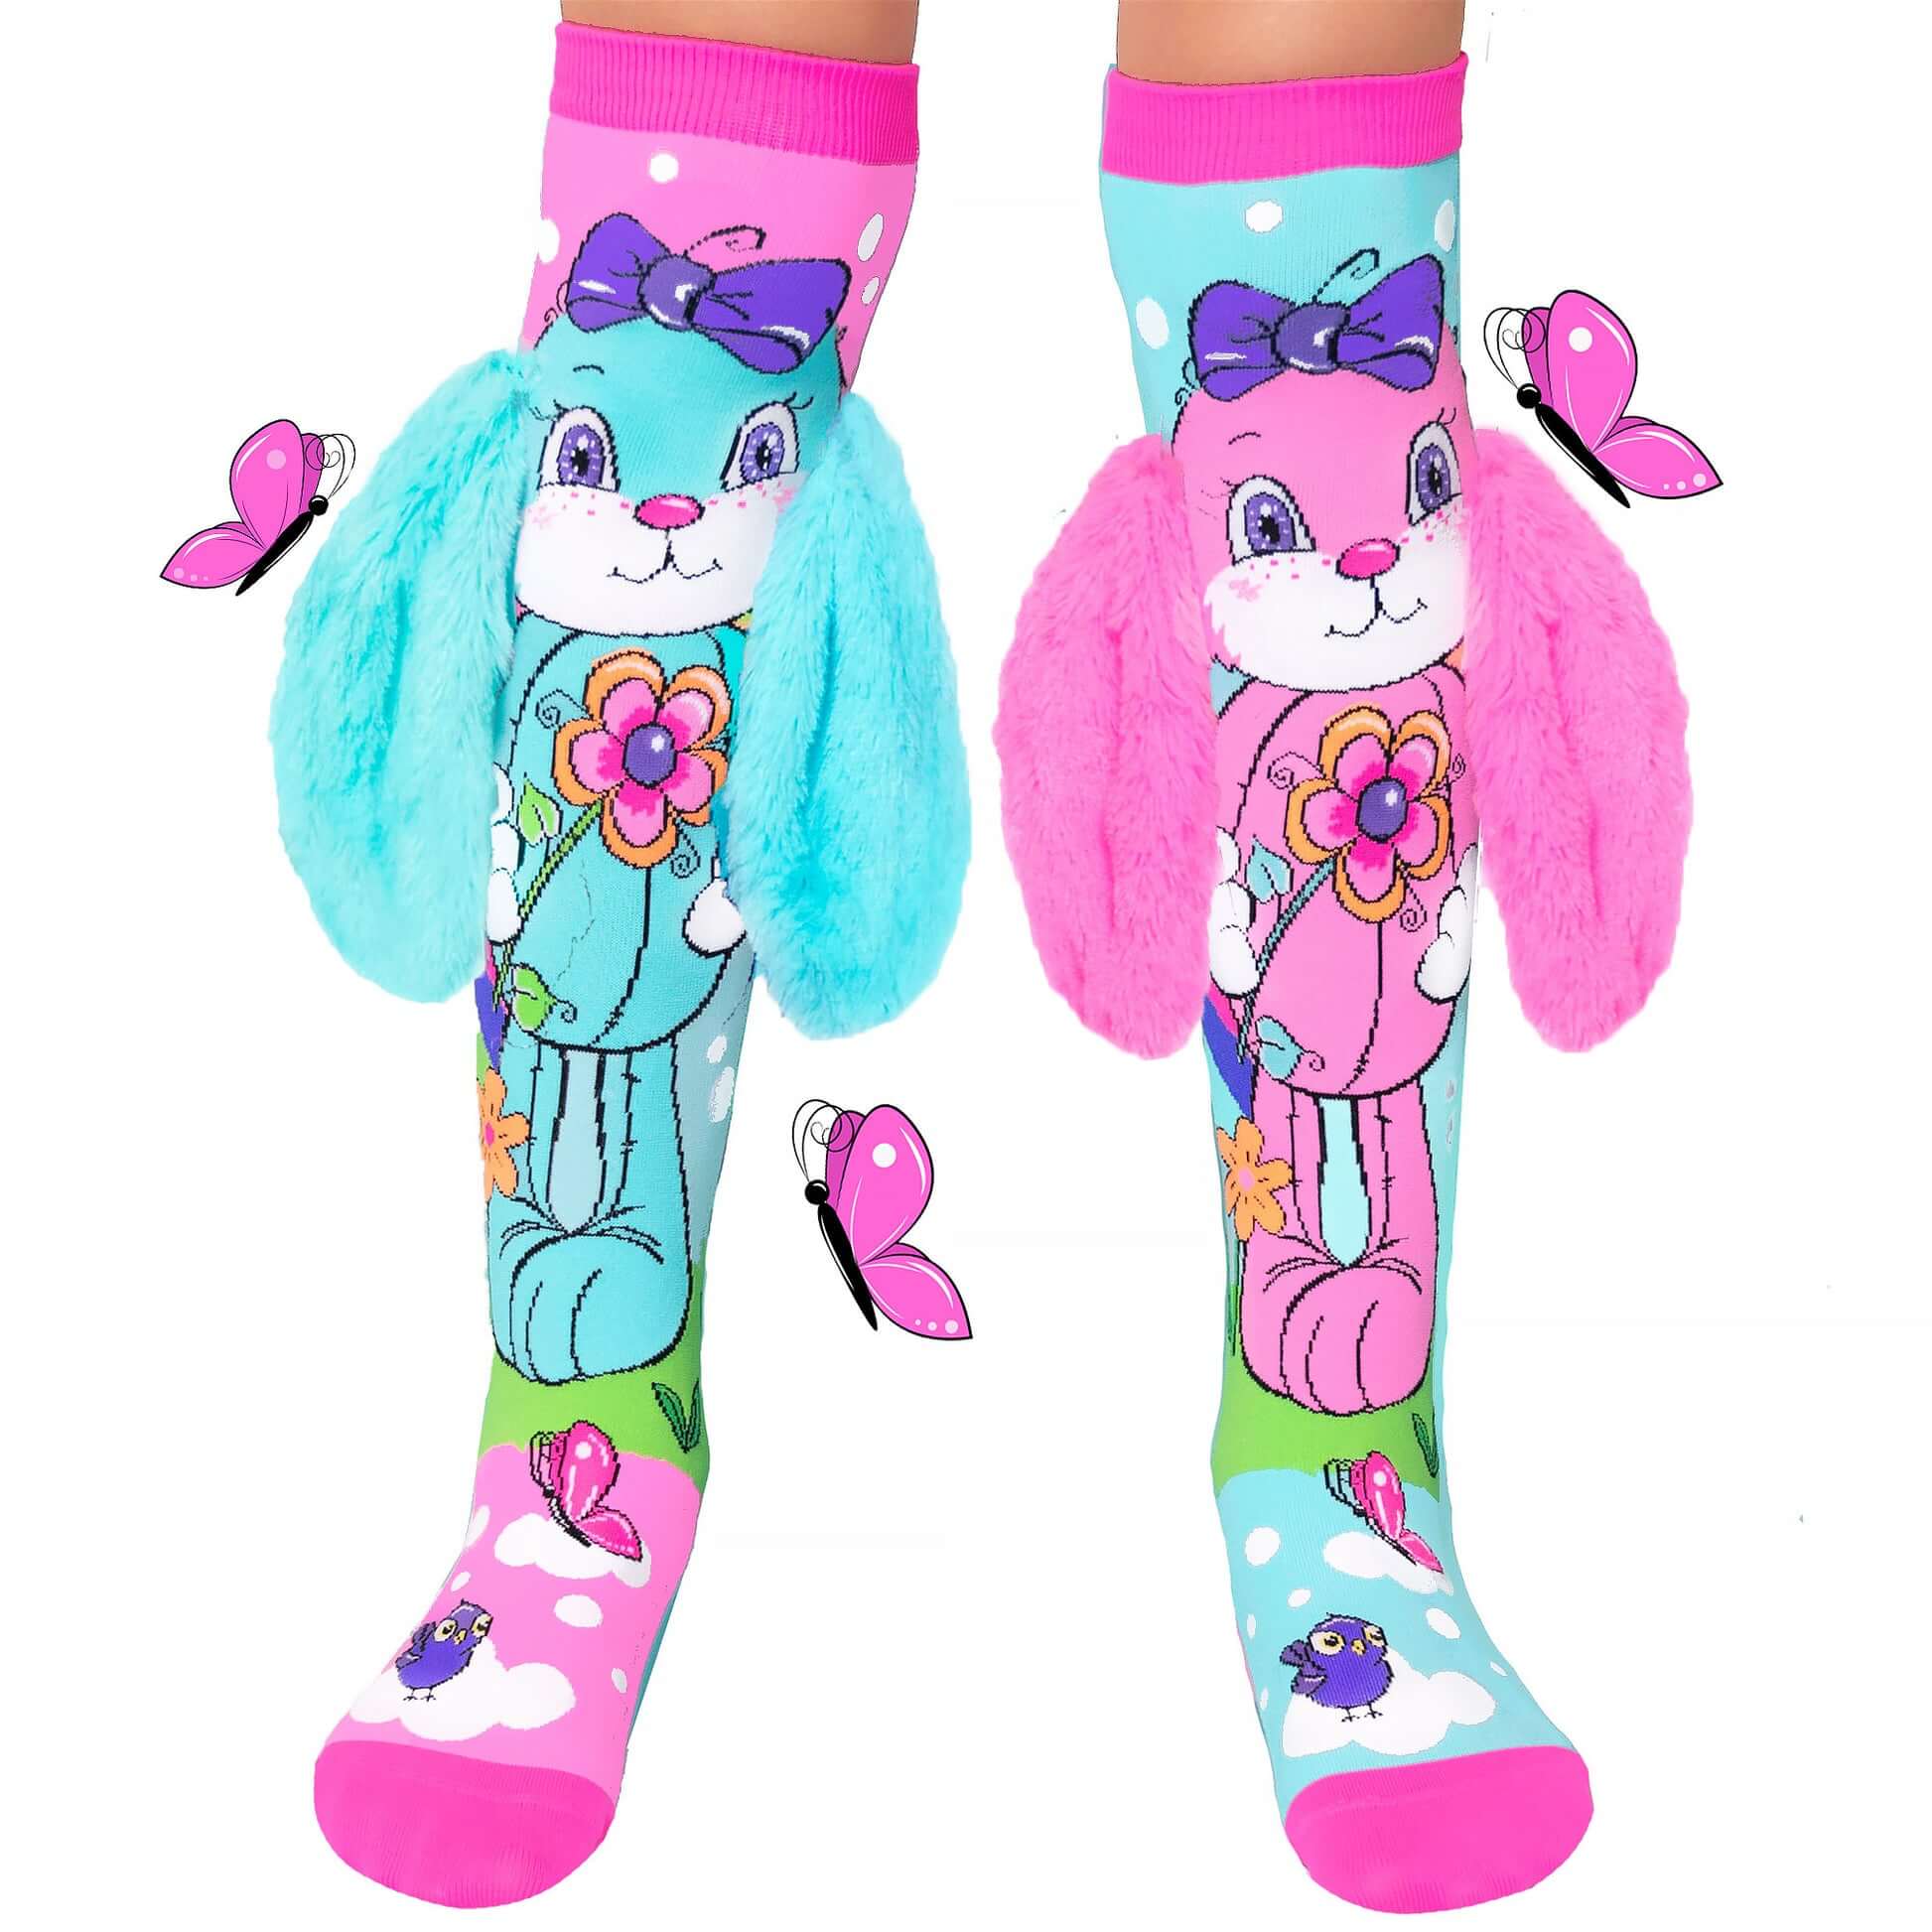 hunny bunny kids socks by madmia